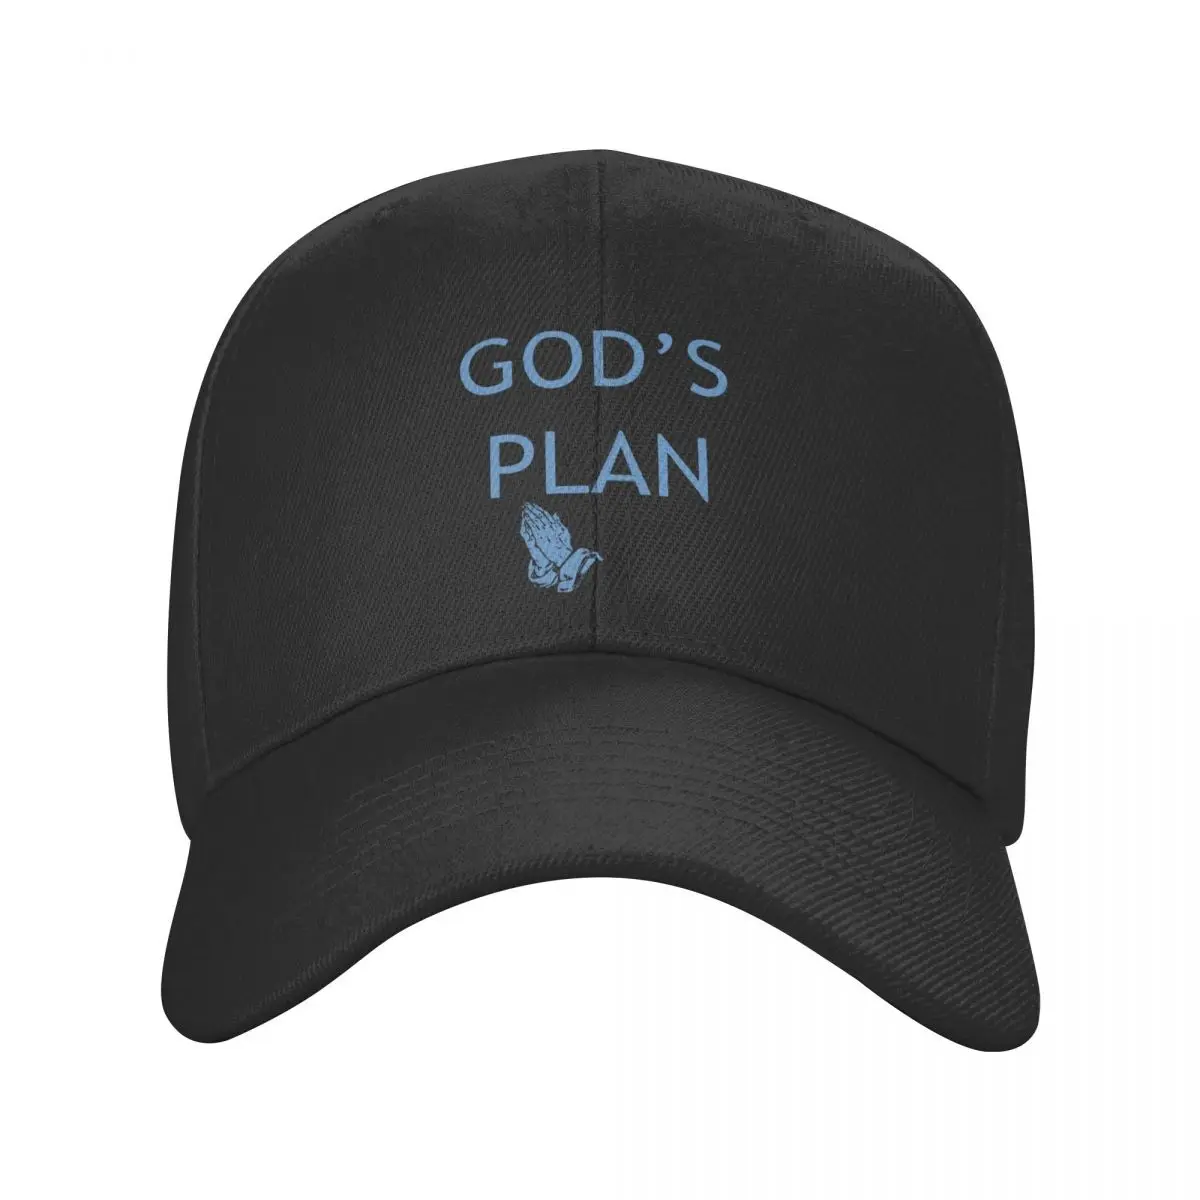 

God's Plan Baseball Cap Adult Hip-Hop Trucker Worker Cap Christian Hats Adjustable Snapback Caps Trucker Cap Summer Caps